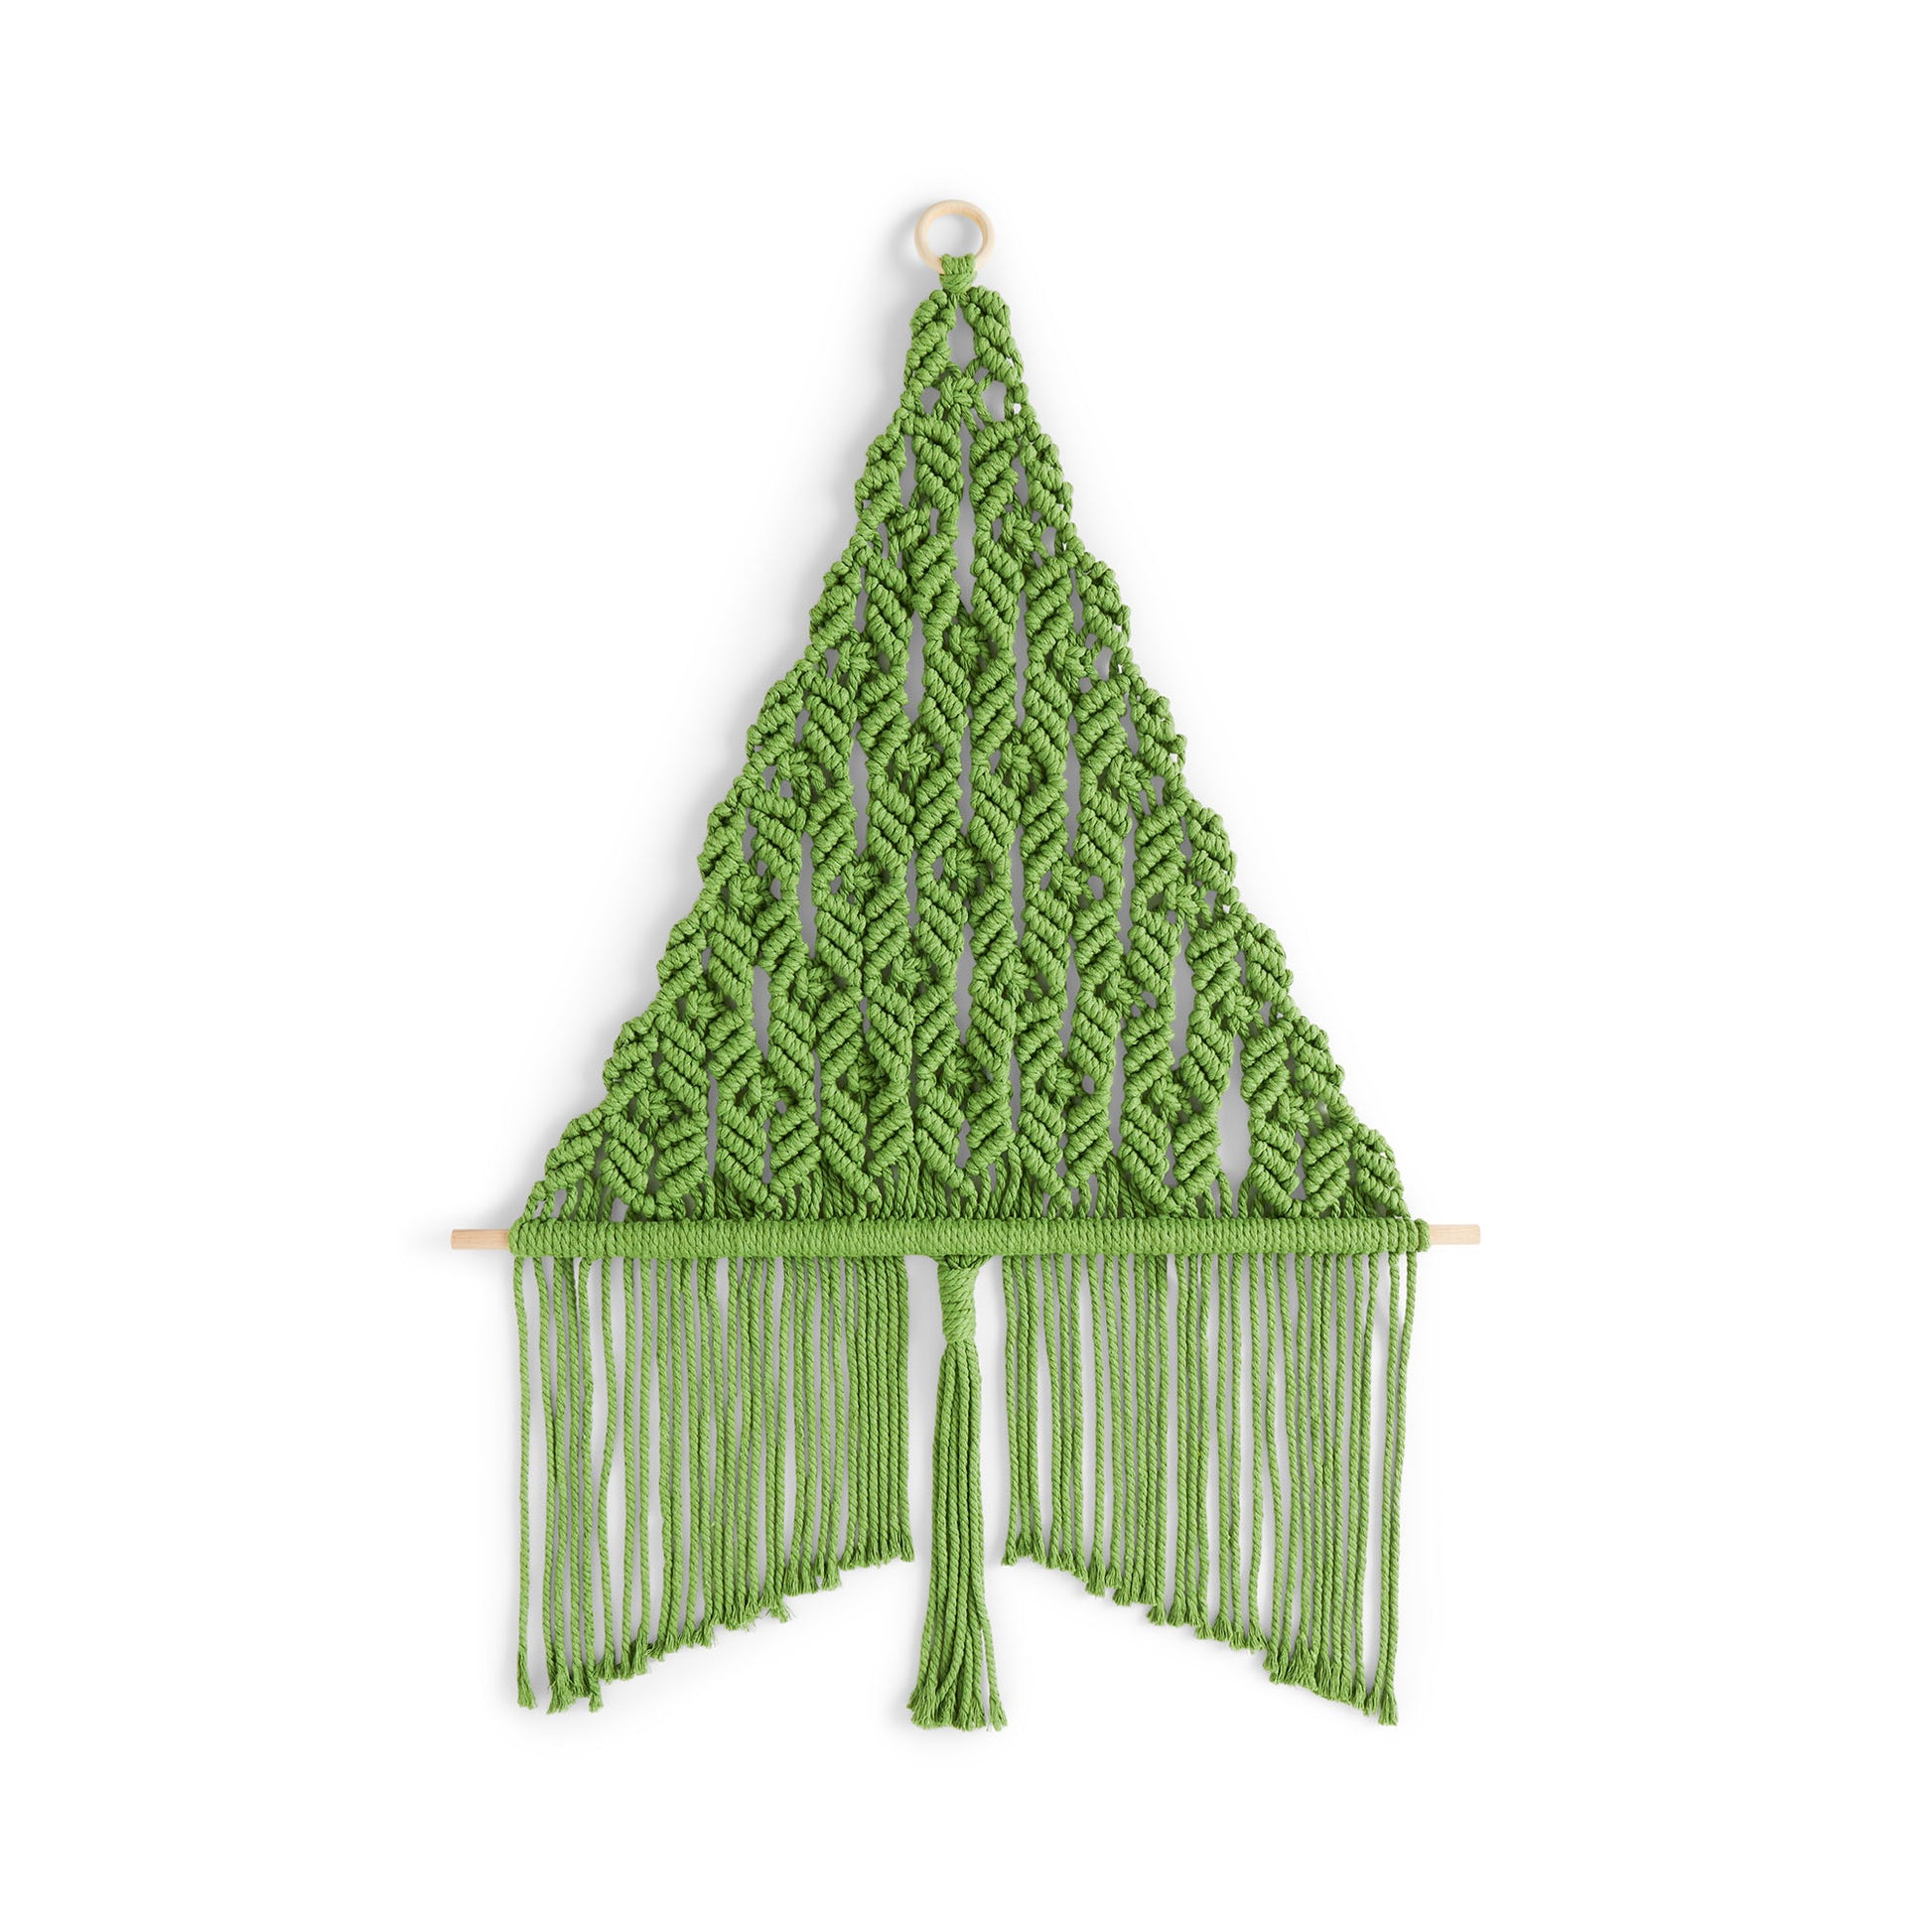 Free Bernat Craft Macrame Holiday Tree Pattern